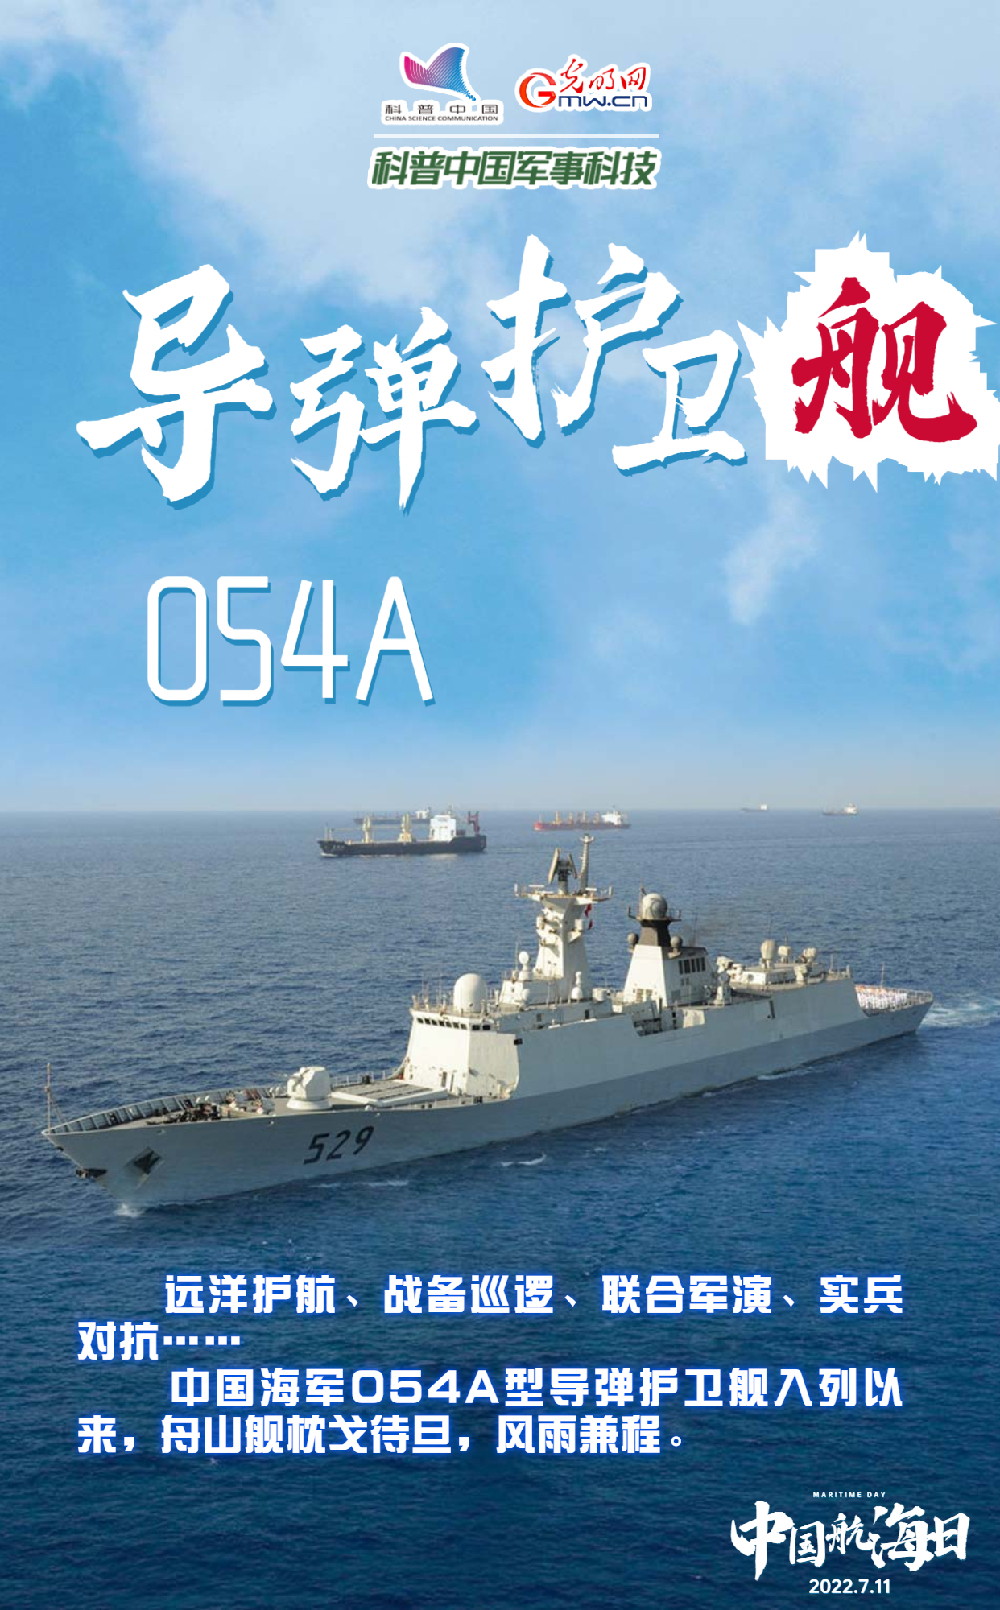 【中国航海日】悠悠华夏万里海江，人民海军向海图强！